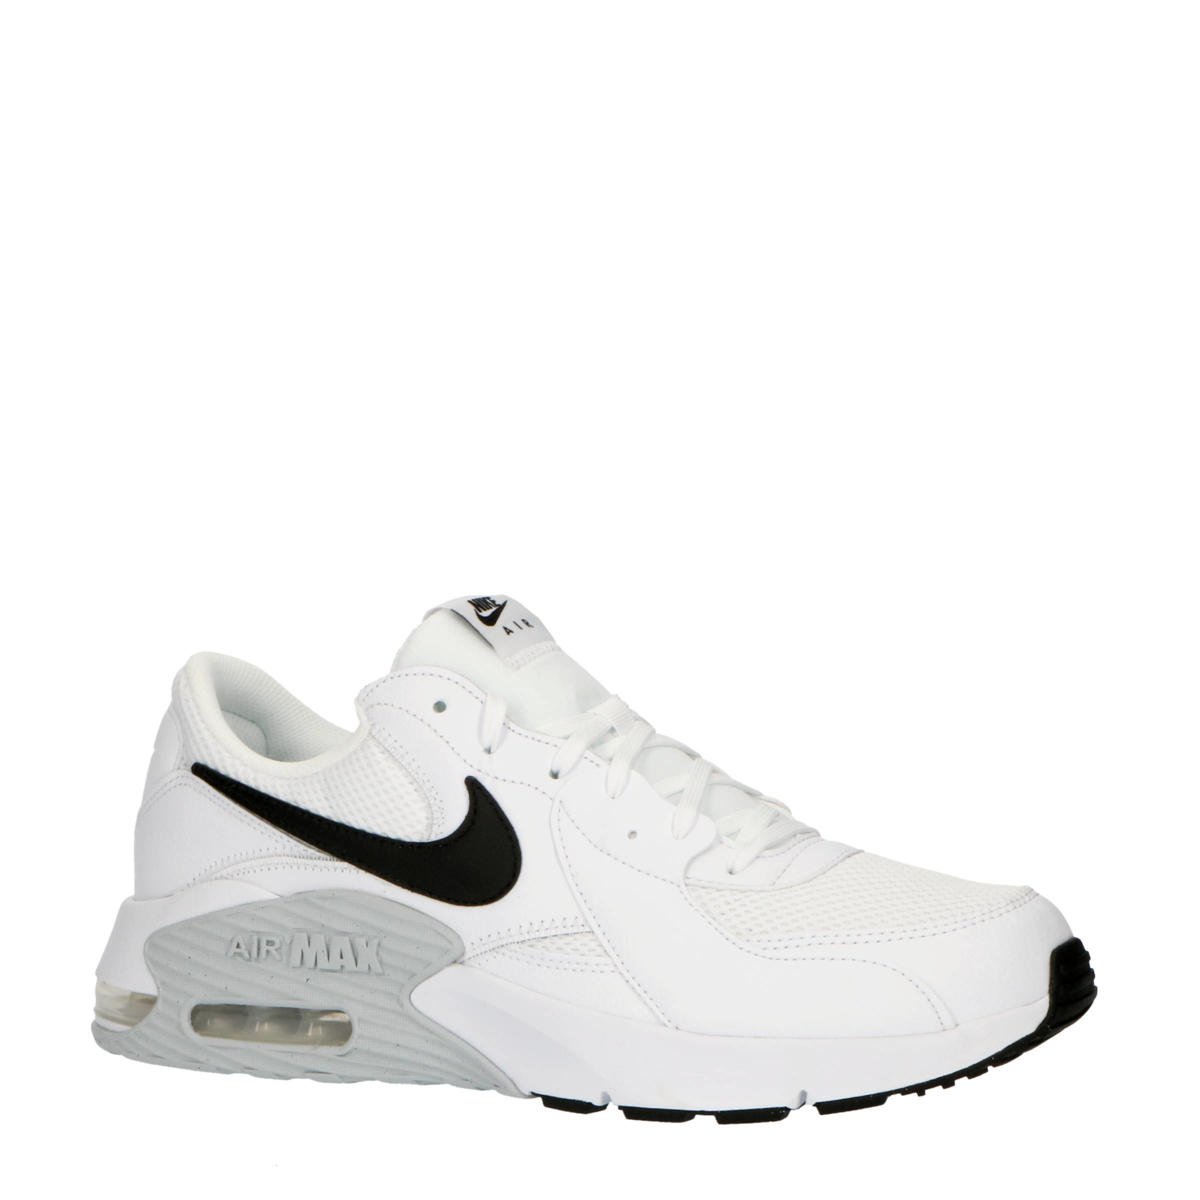 vonk storm ziekte Nike Air Max Excee sneakers wit/zwart/zilver | wehkamp